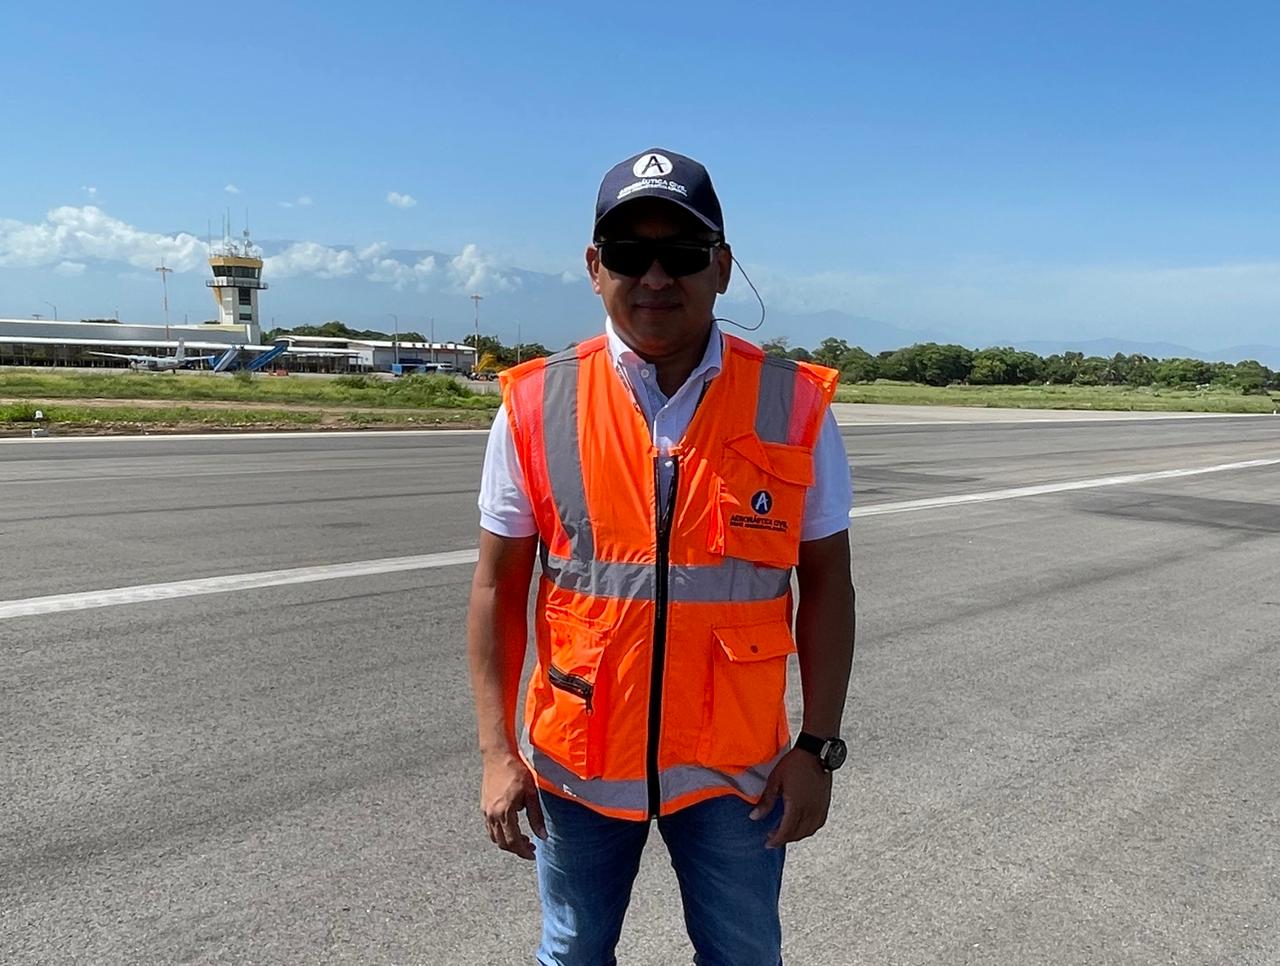 NOTICIA: A ritmo acelerado avanzan obras de infraestructura en aeropuerto de Valledupar